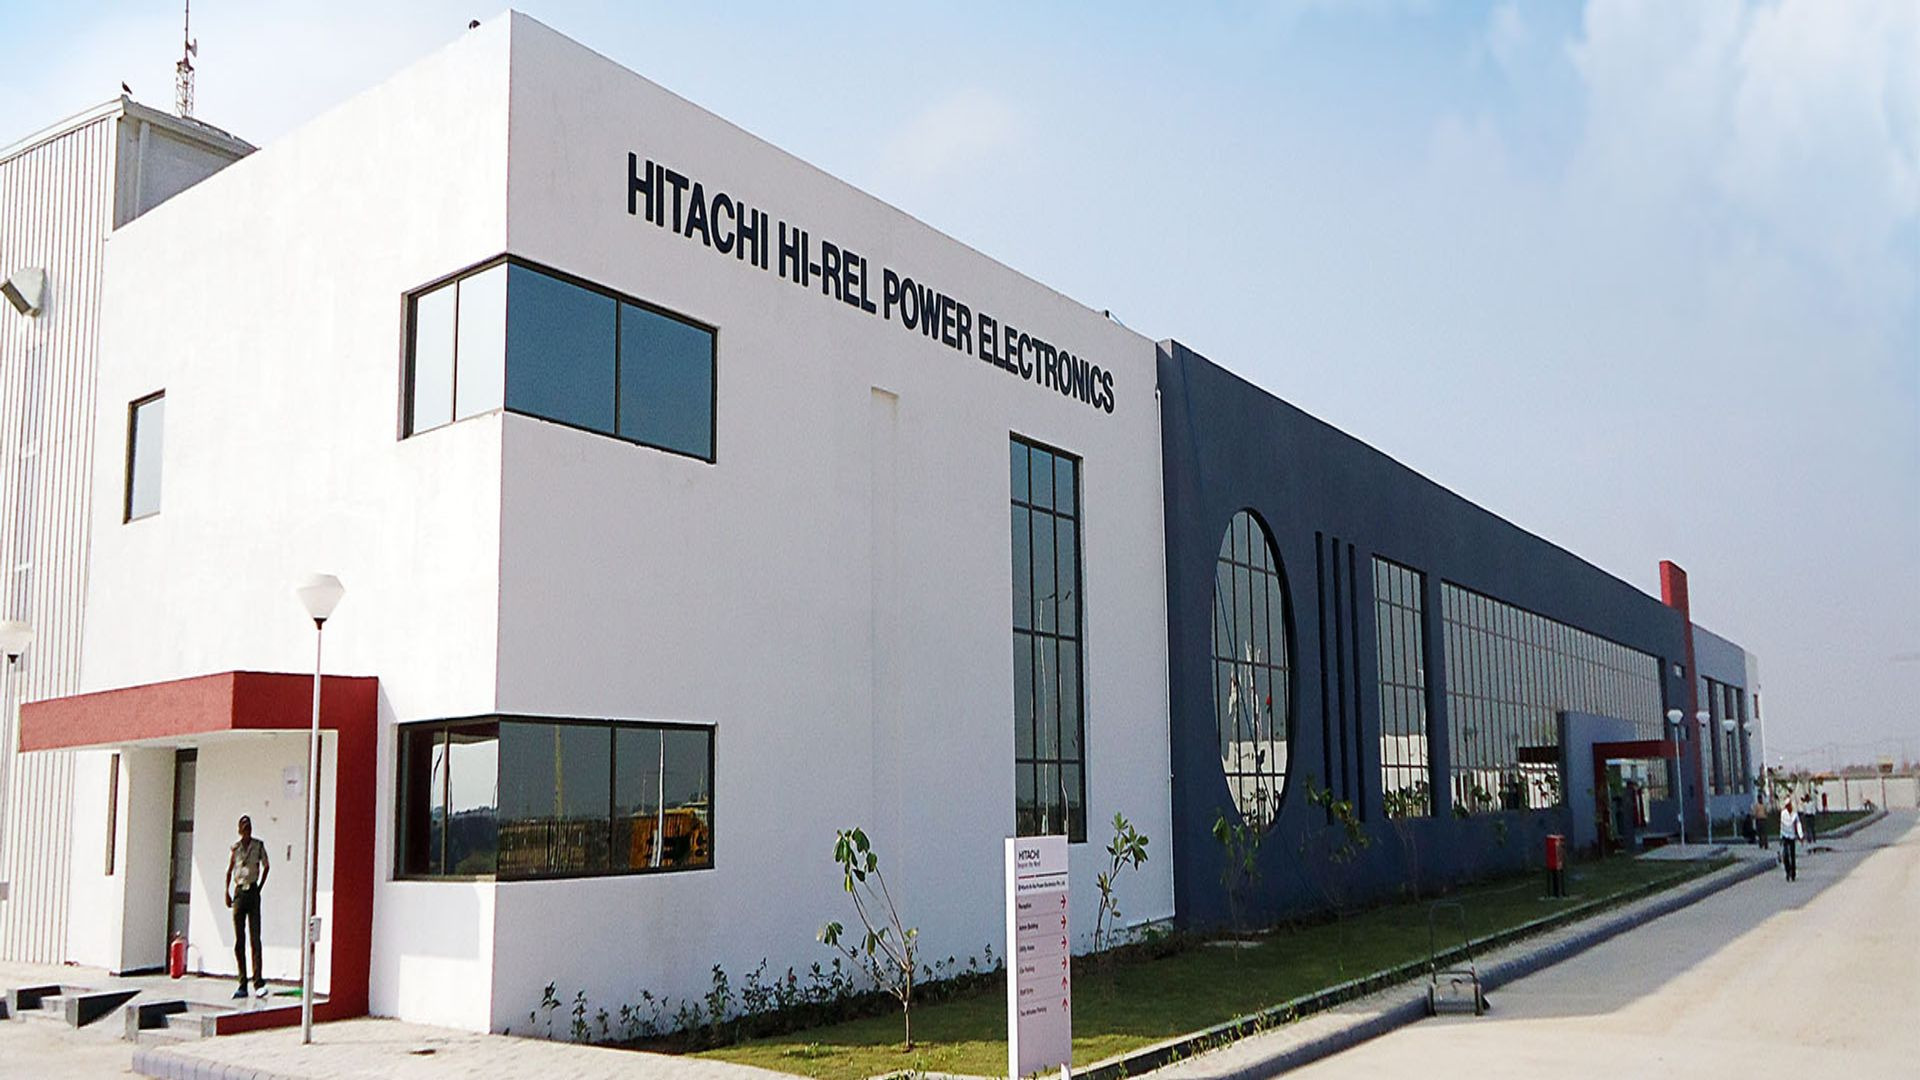 Hitachi Hi-Rel